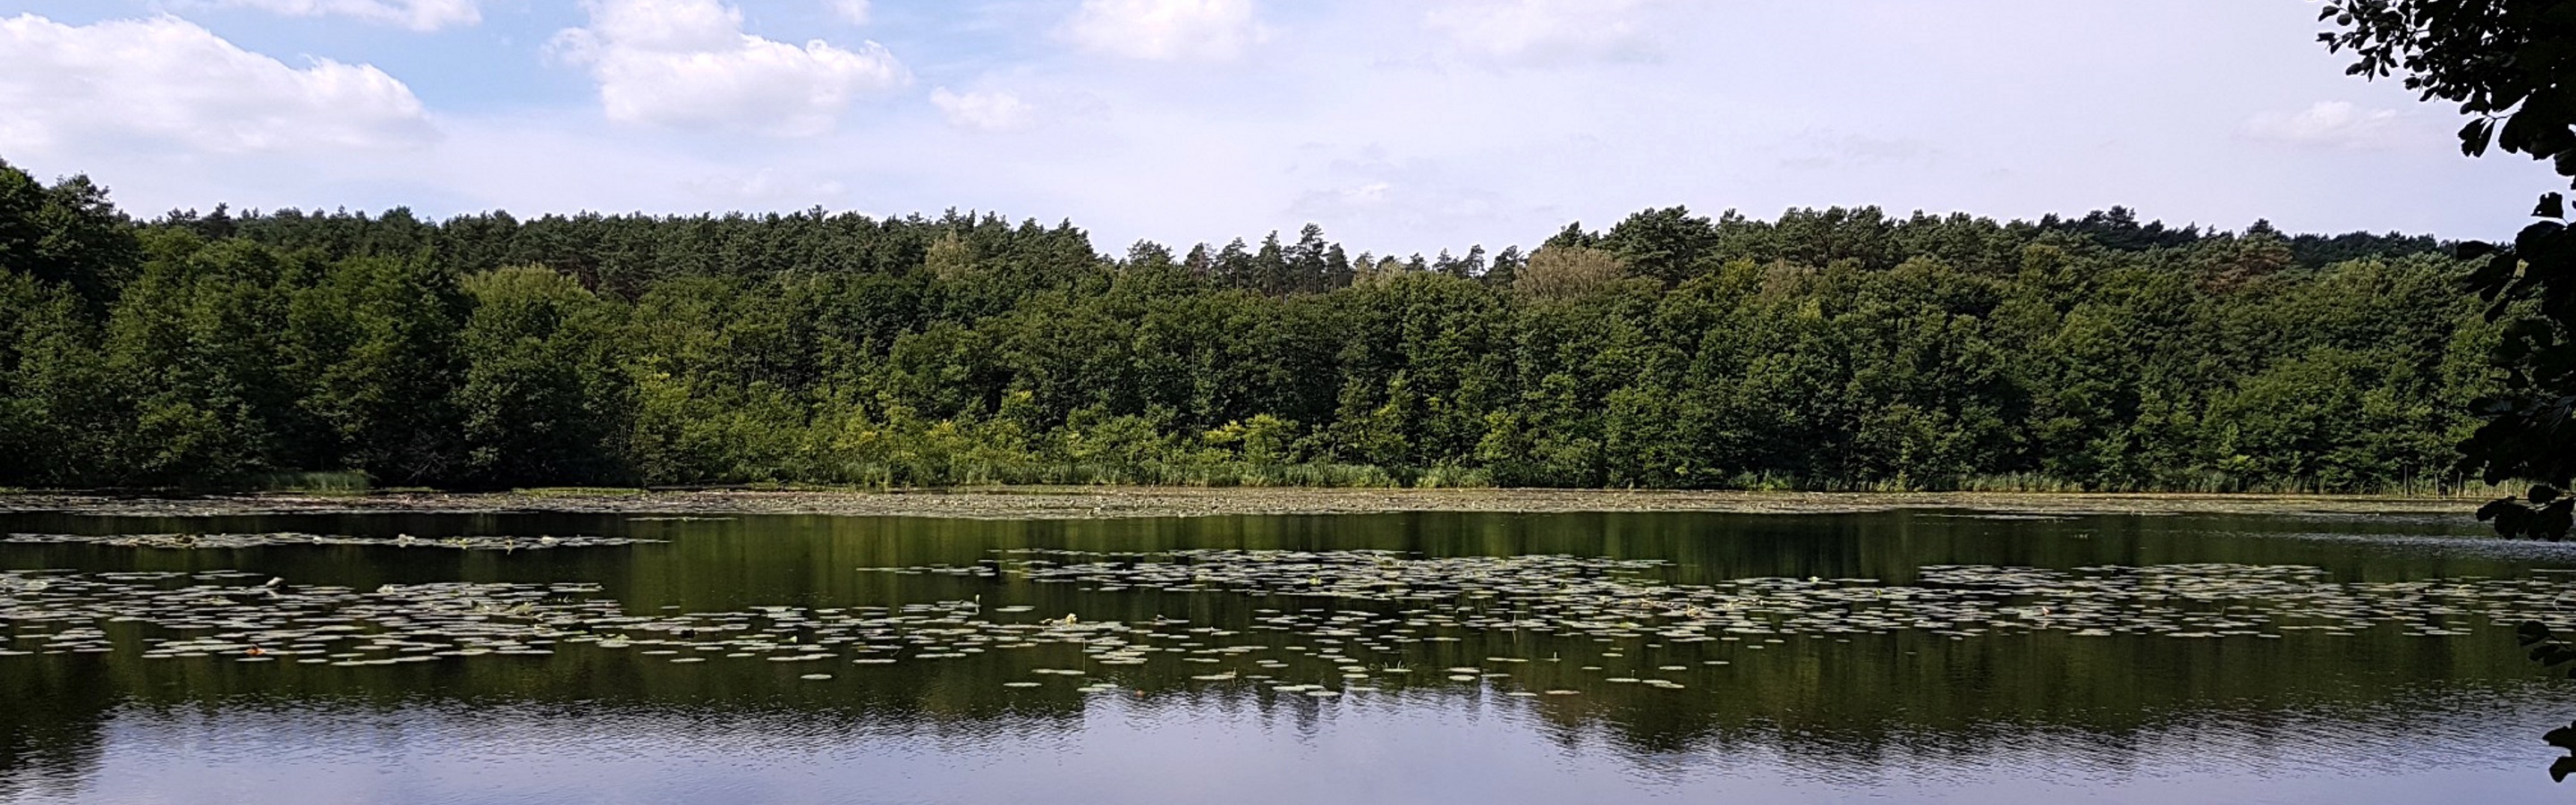 Sechs-Seen-Tour im Naturpark Barnim